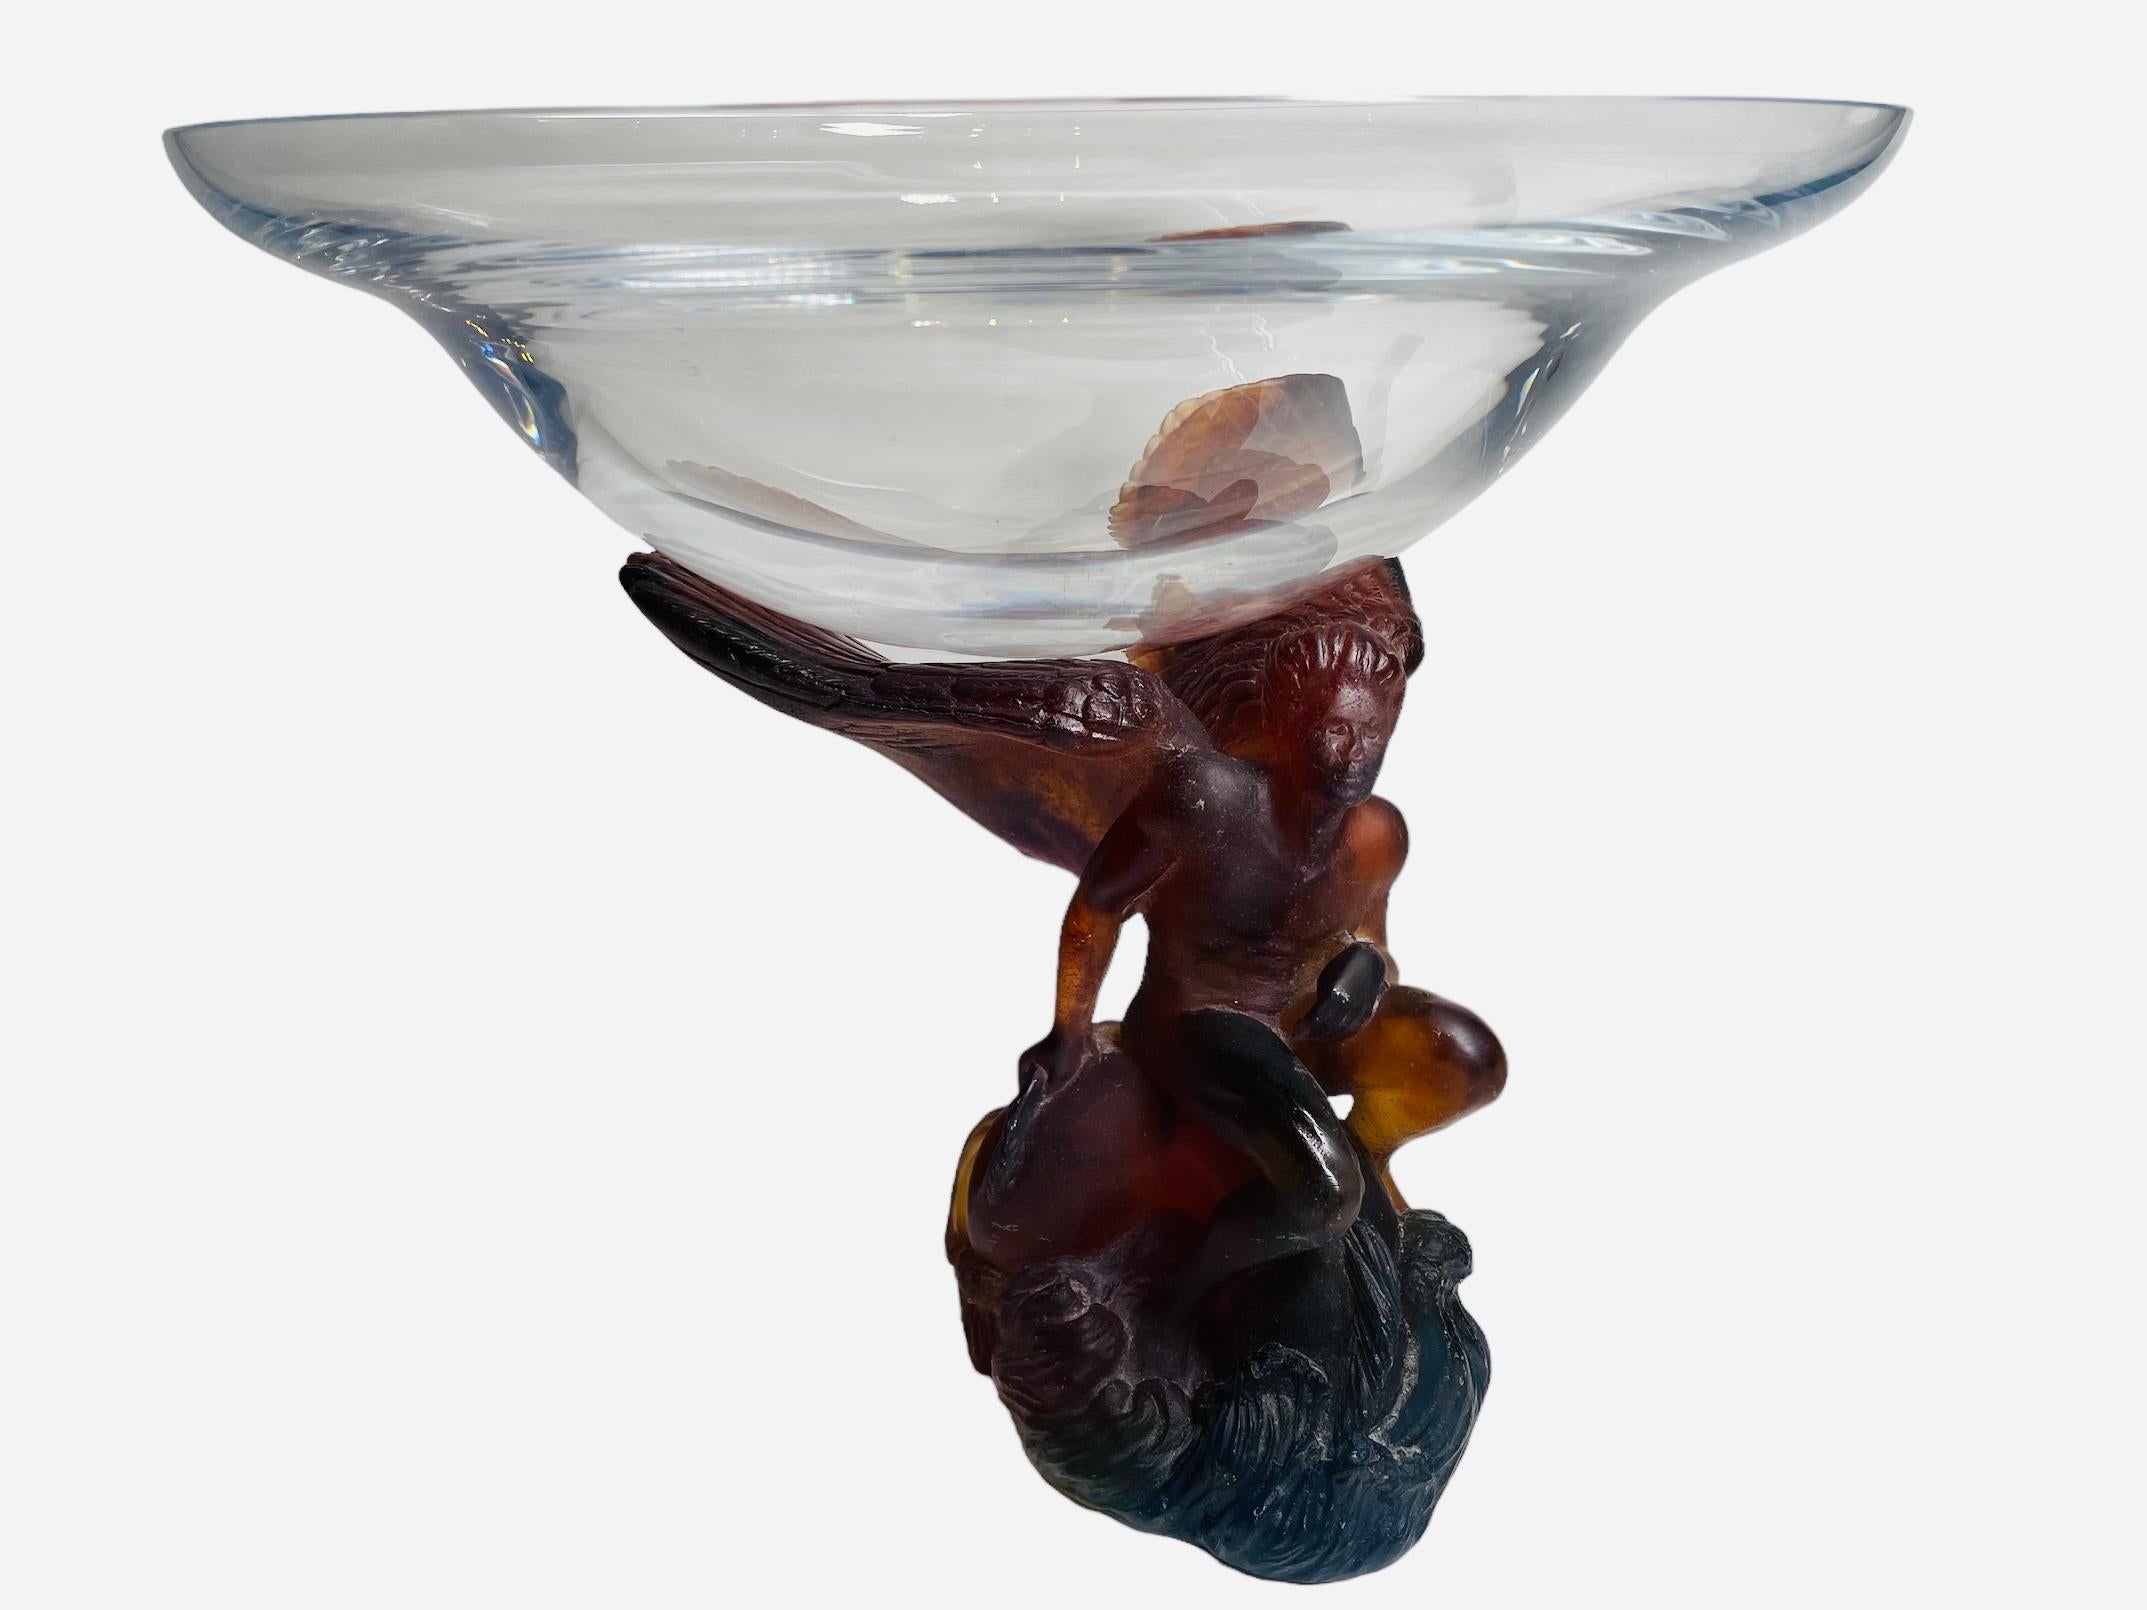 Daum Pate de Verre Crystal Angel Sculpture Compote/Bowl For Sale 1